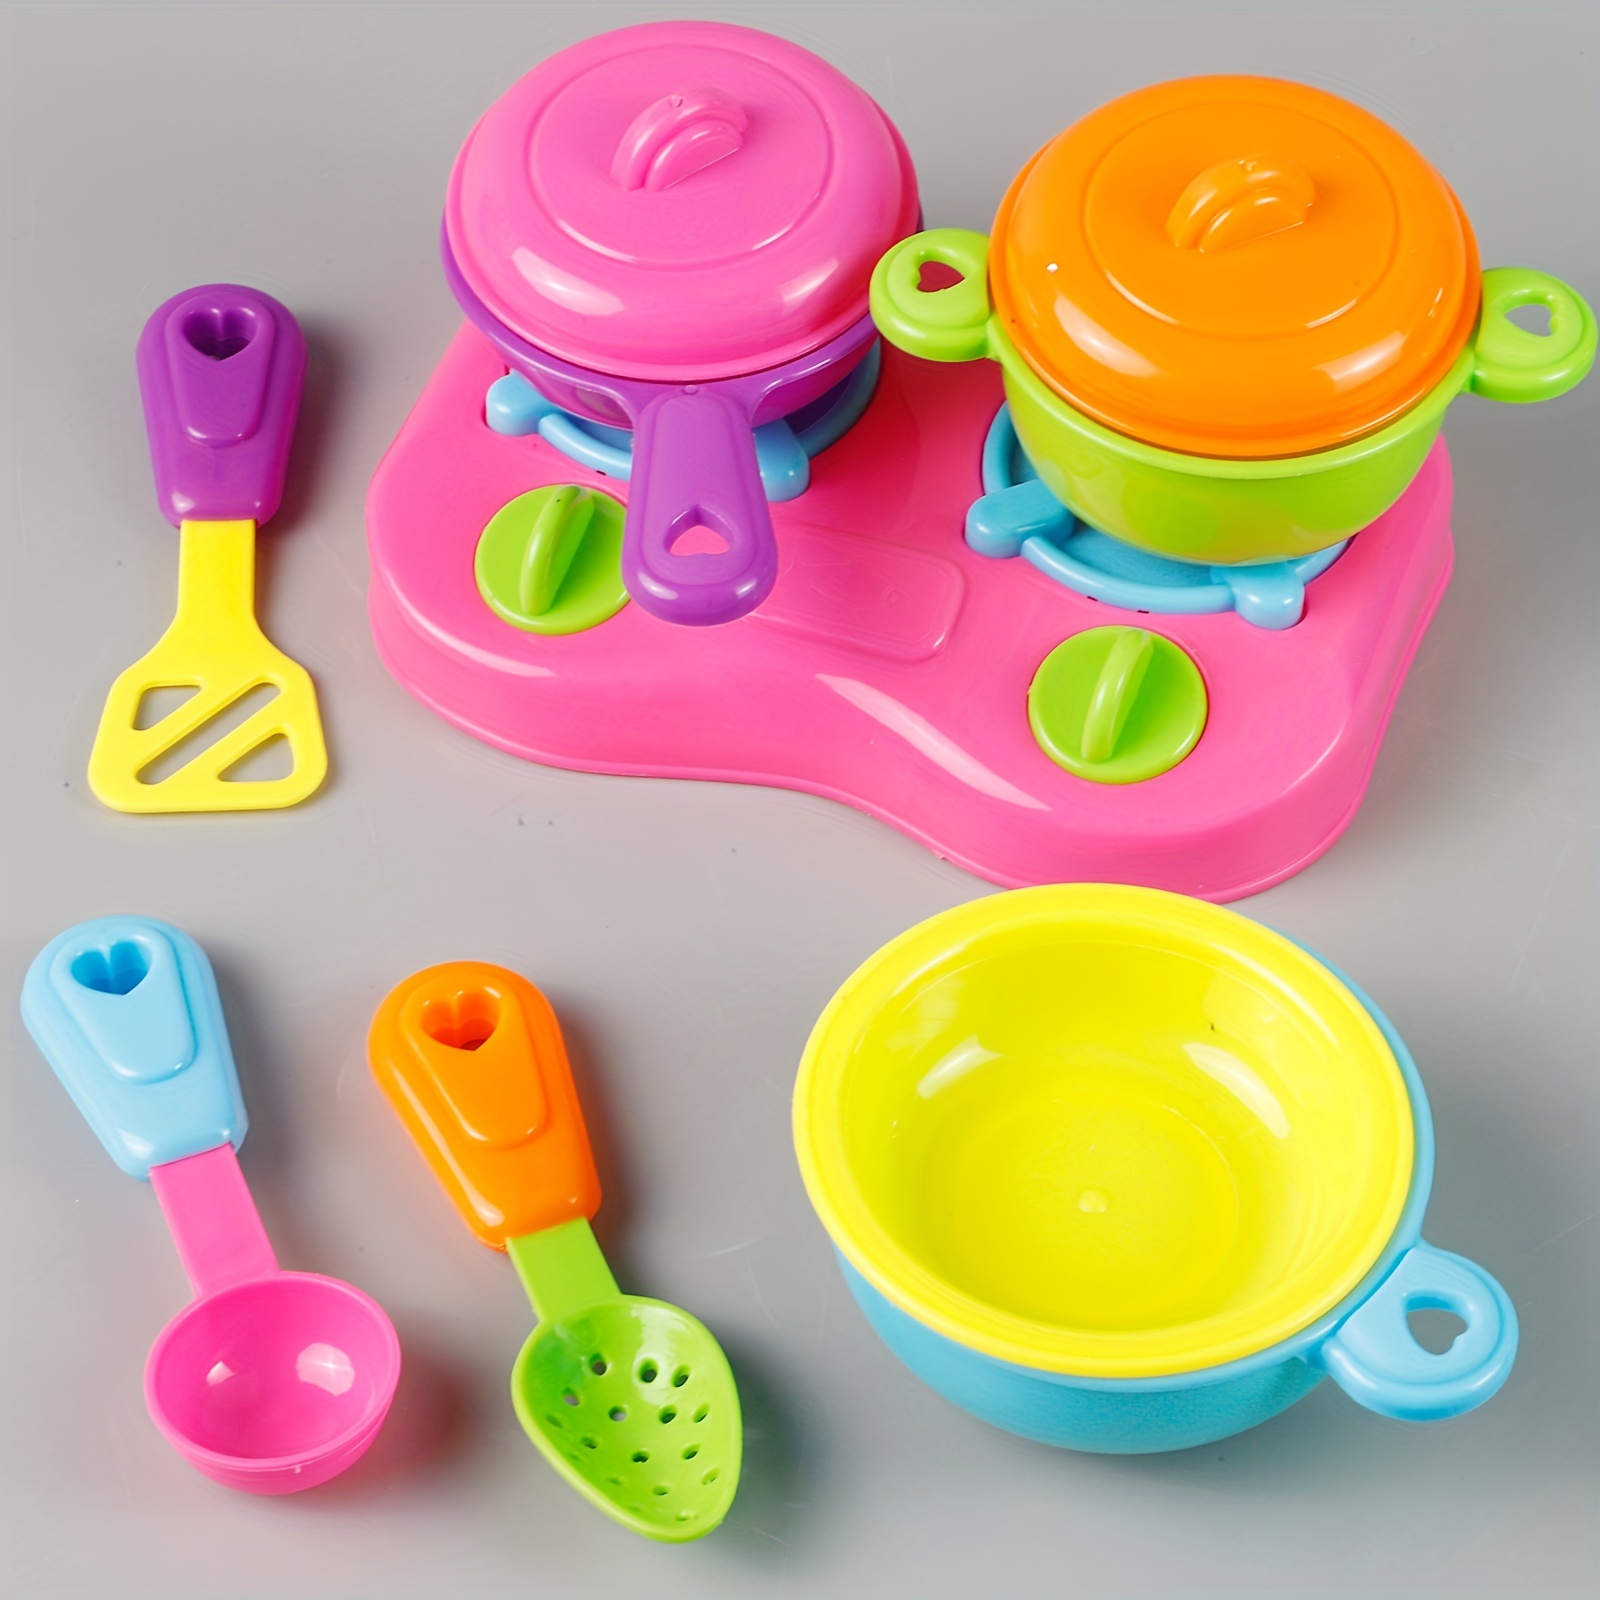 Aspiradora de juguete para niños pequeños – Juego de aspiradora de juguete  para juegos de rol, juguetes domésticos con efectos de sonido para niños a